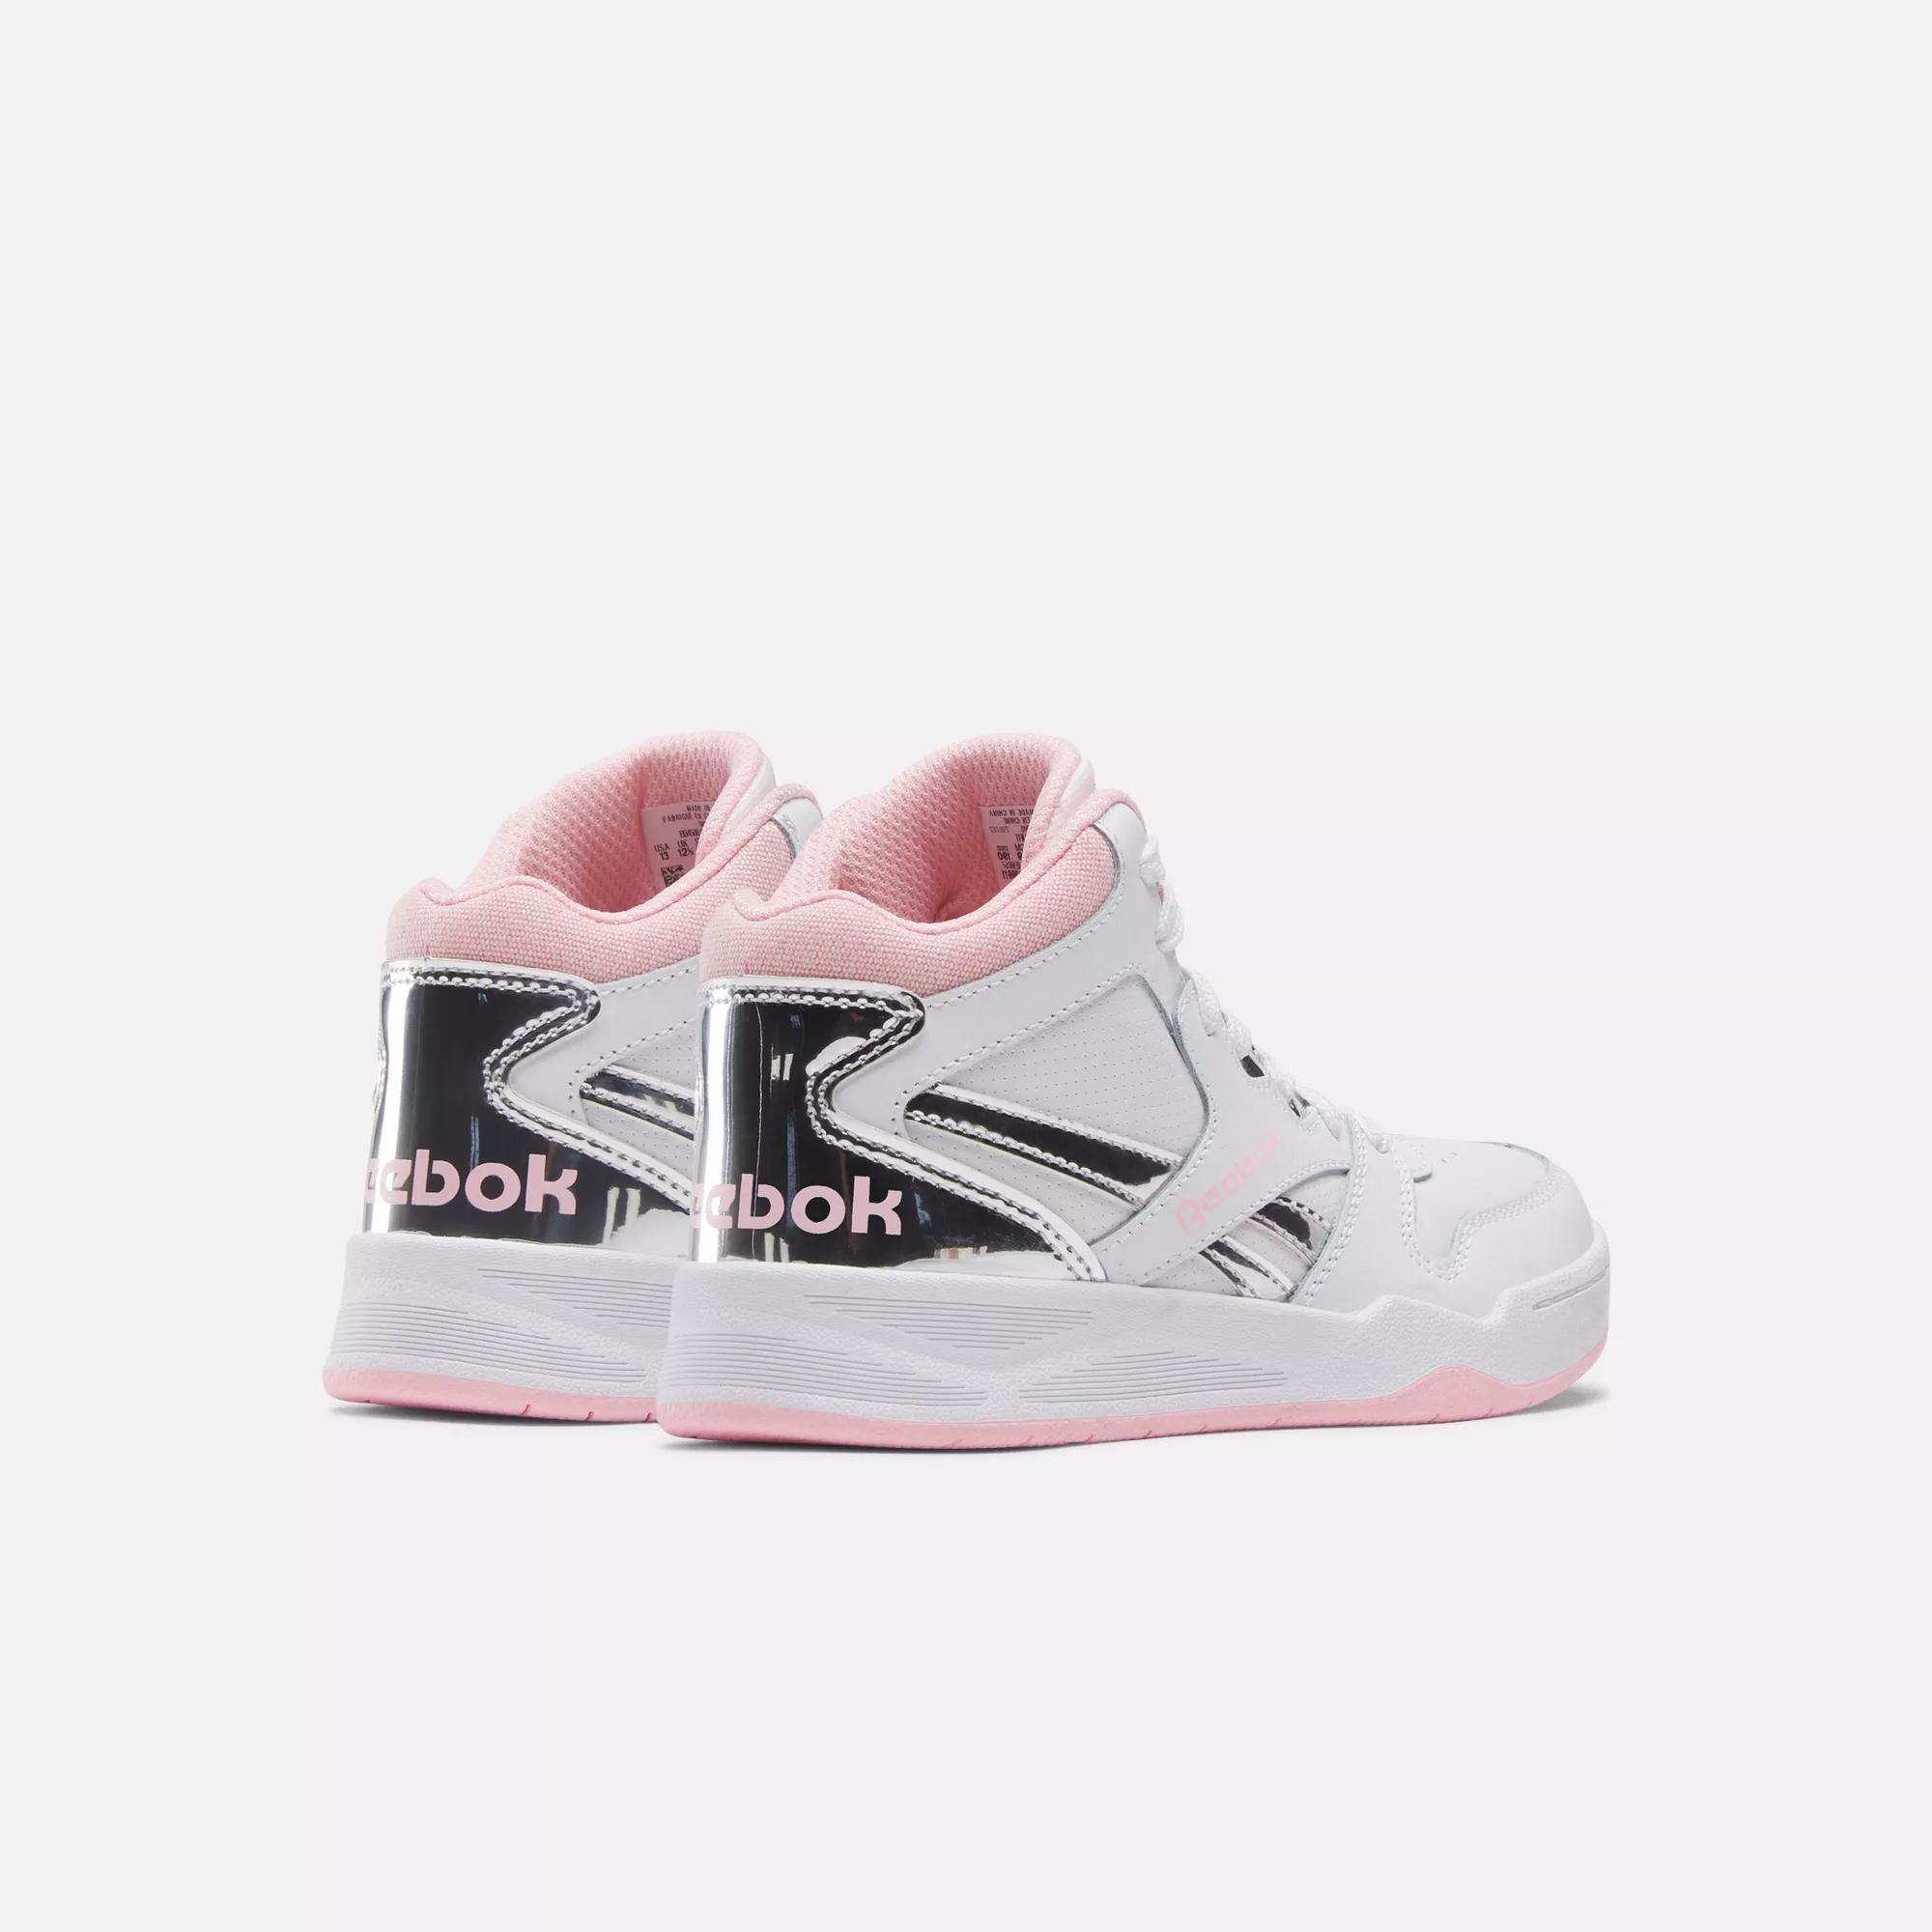 BB4500 Court Shoes - Preschool - White / Pink Glow / White | Reebok